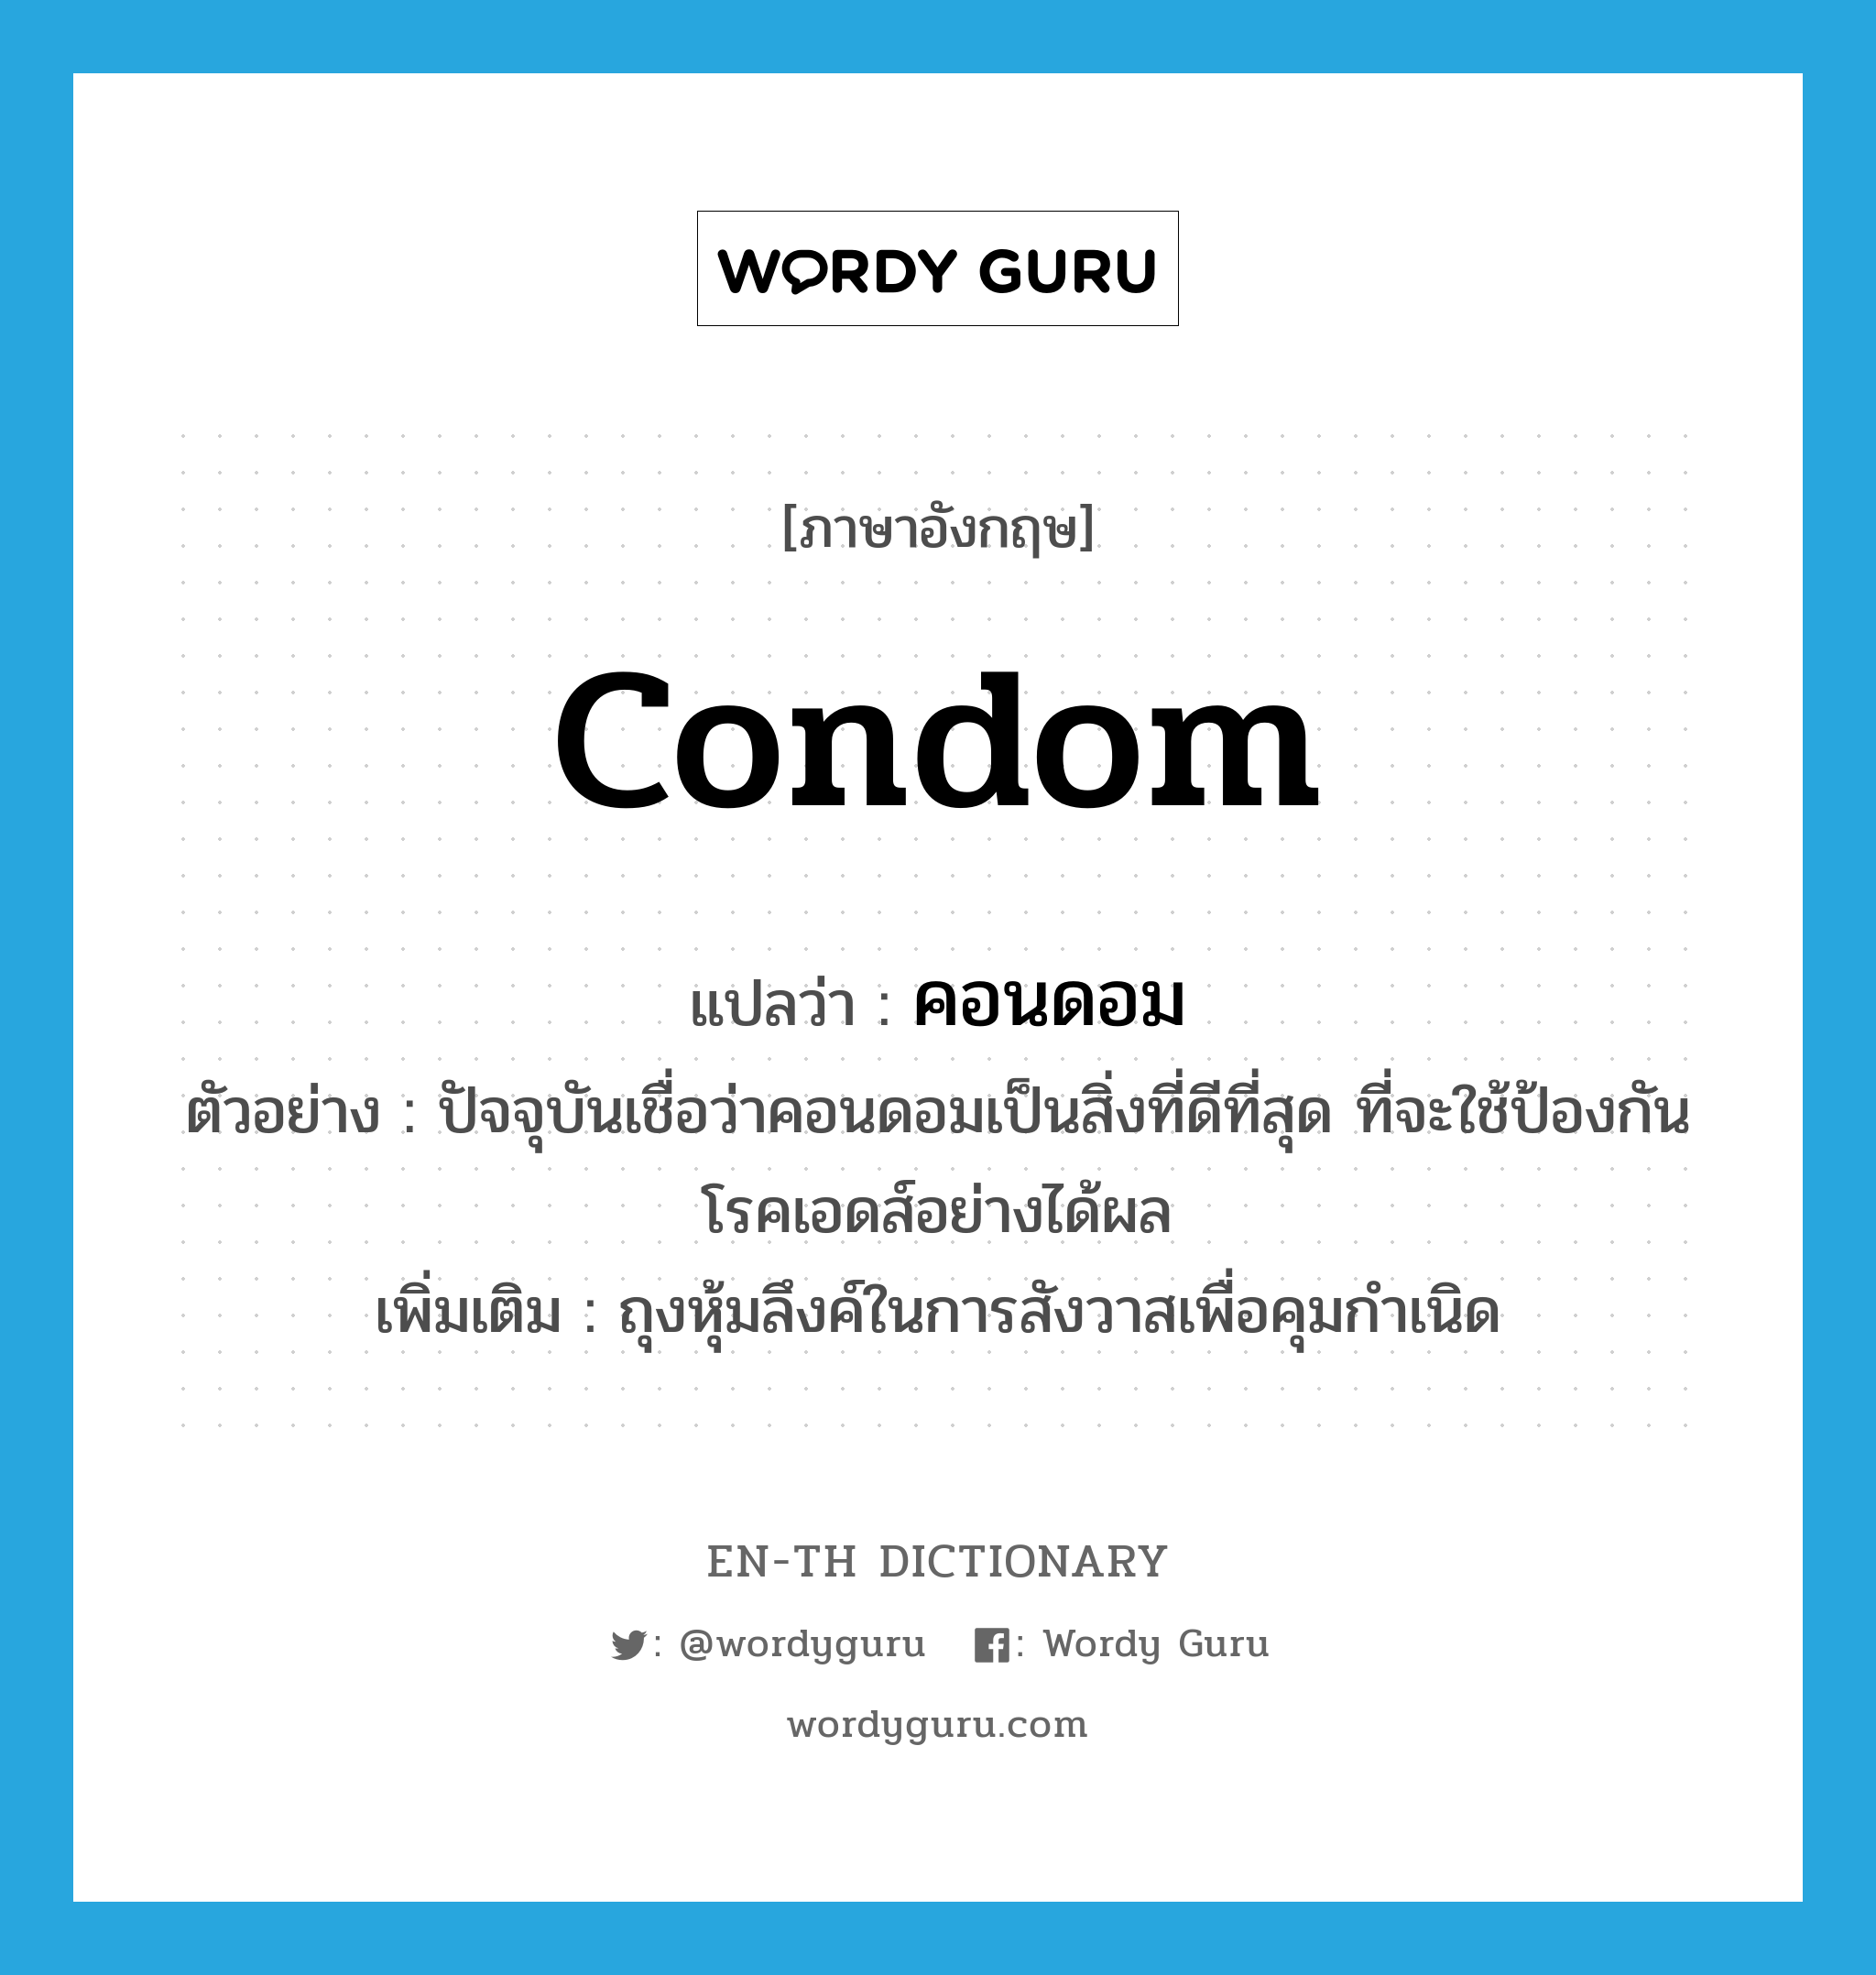 คอนดอม ภาษาอังกฤษ?, คำศัพท์ภาษาอังกฤษ คอนดอม แปลว่า condom ประเภท N ตัวอย่าง ปัจจุบันเชื่อว่าคอนดอมเป็นสิ่งที่ดีที่สุด ที่จะใช้ป้องกันโรคเอดส์อย่างได้ผล เพิ่มเติม ถุงหุ้มลึงค์ในการสังวาสเพื่อคุมกำเนิด หมวด N